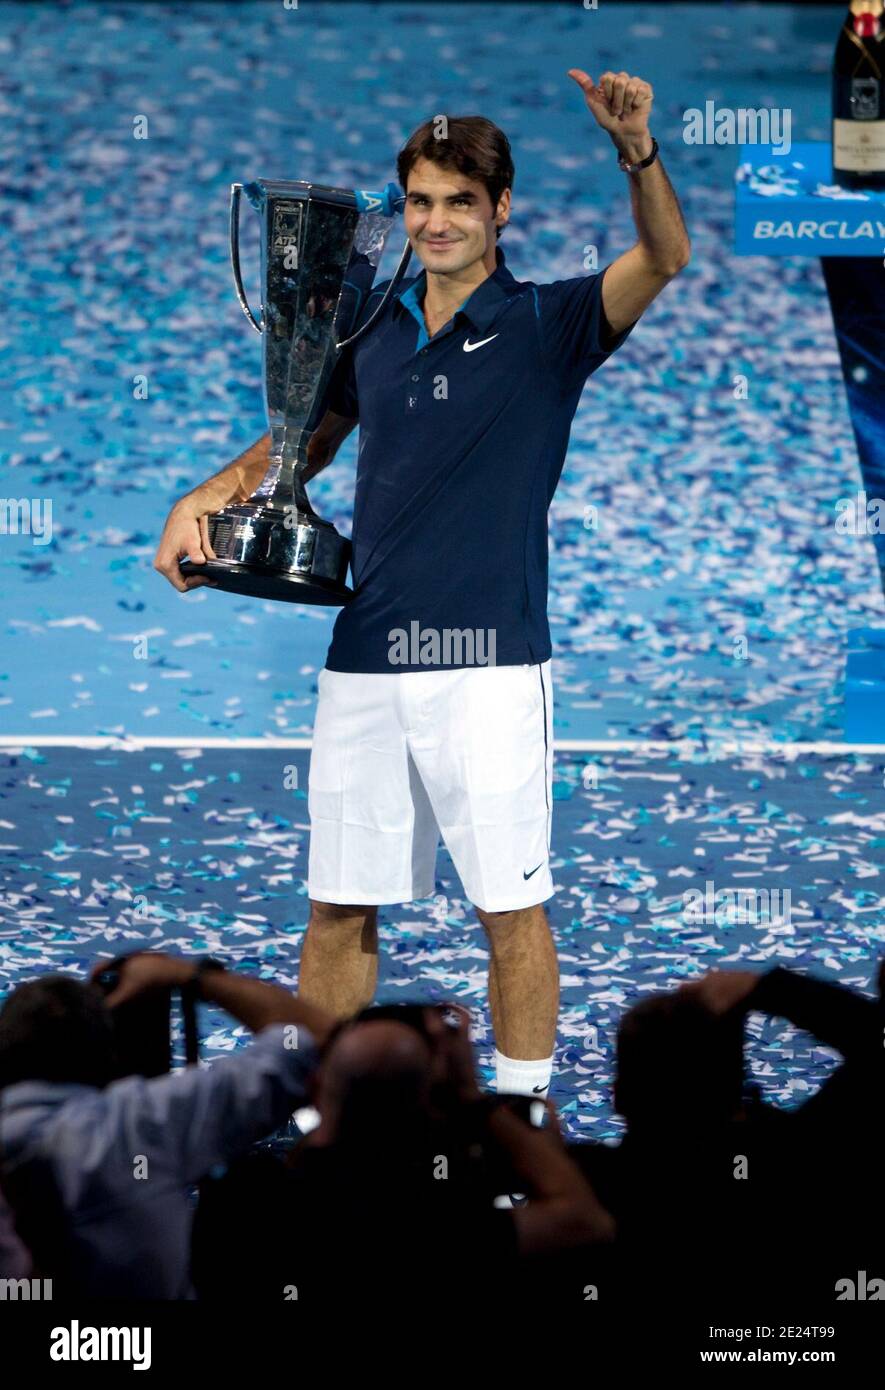 Roger Federer con il trofeo delle finali ATP Foto Stock